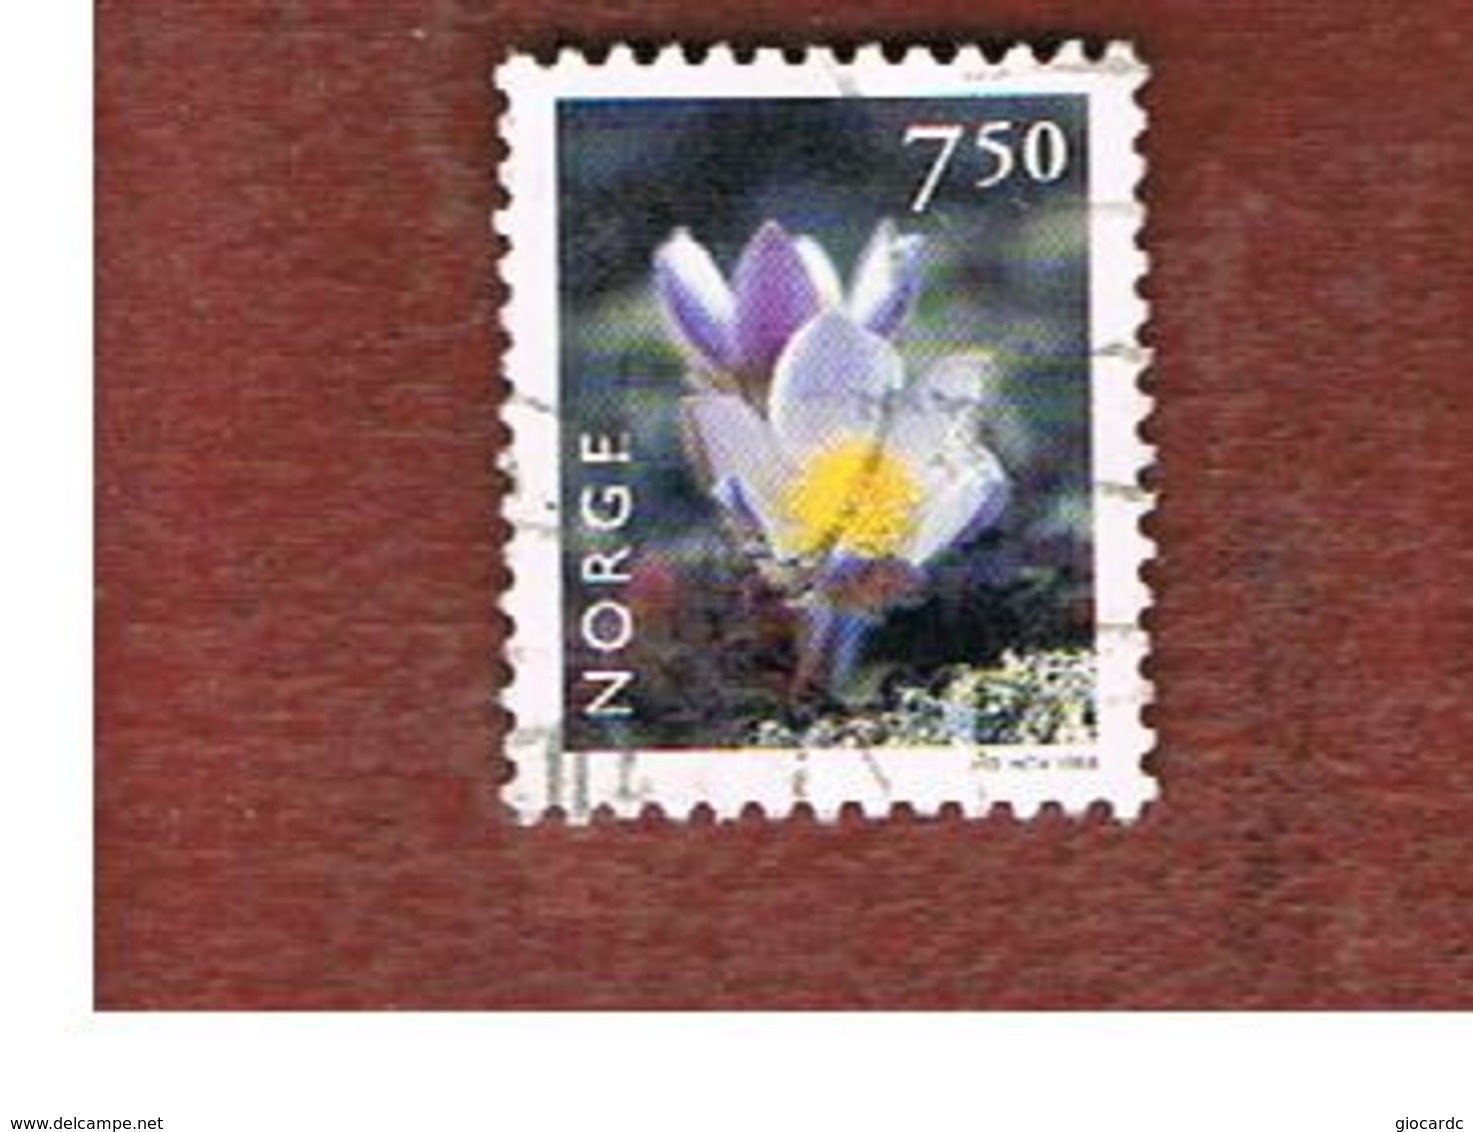 NORVEGIA (NORWAY) -   SG 1272   - 1998  FLOWERS:  PULSATILLA VULGARIS   7,50            - USED° - Used Stamps